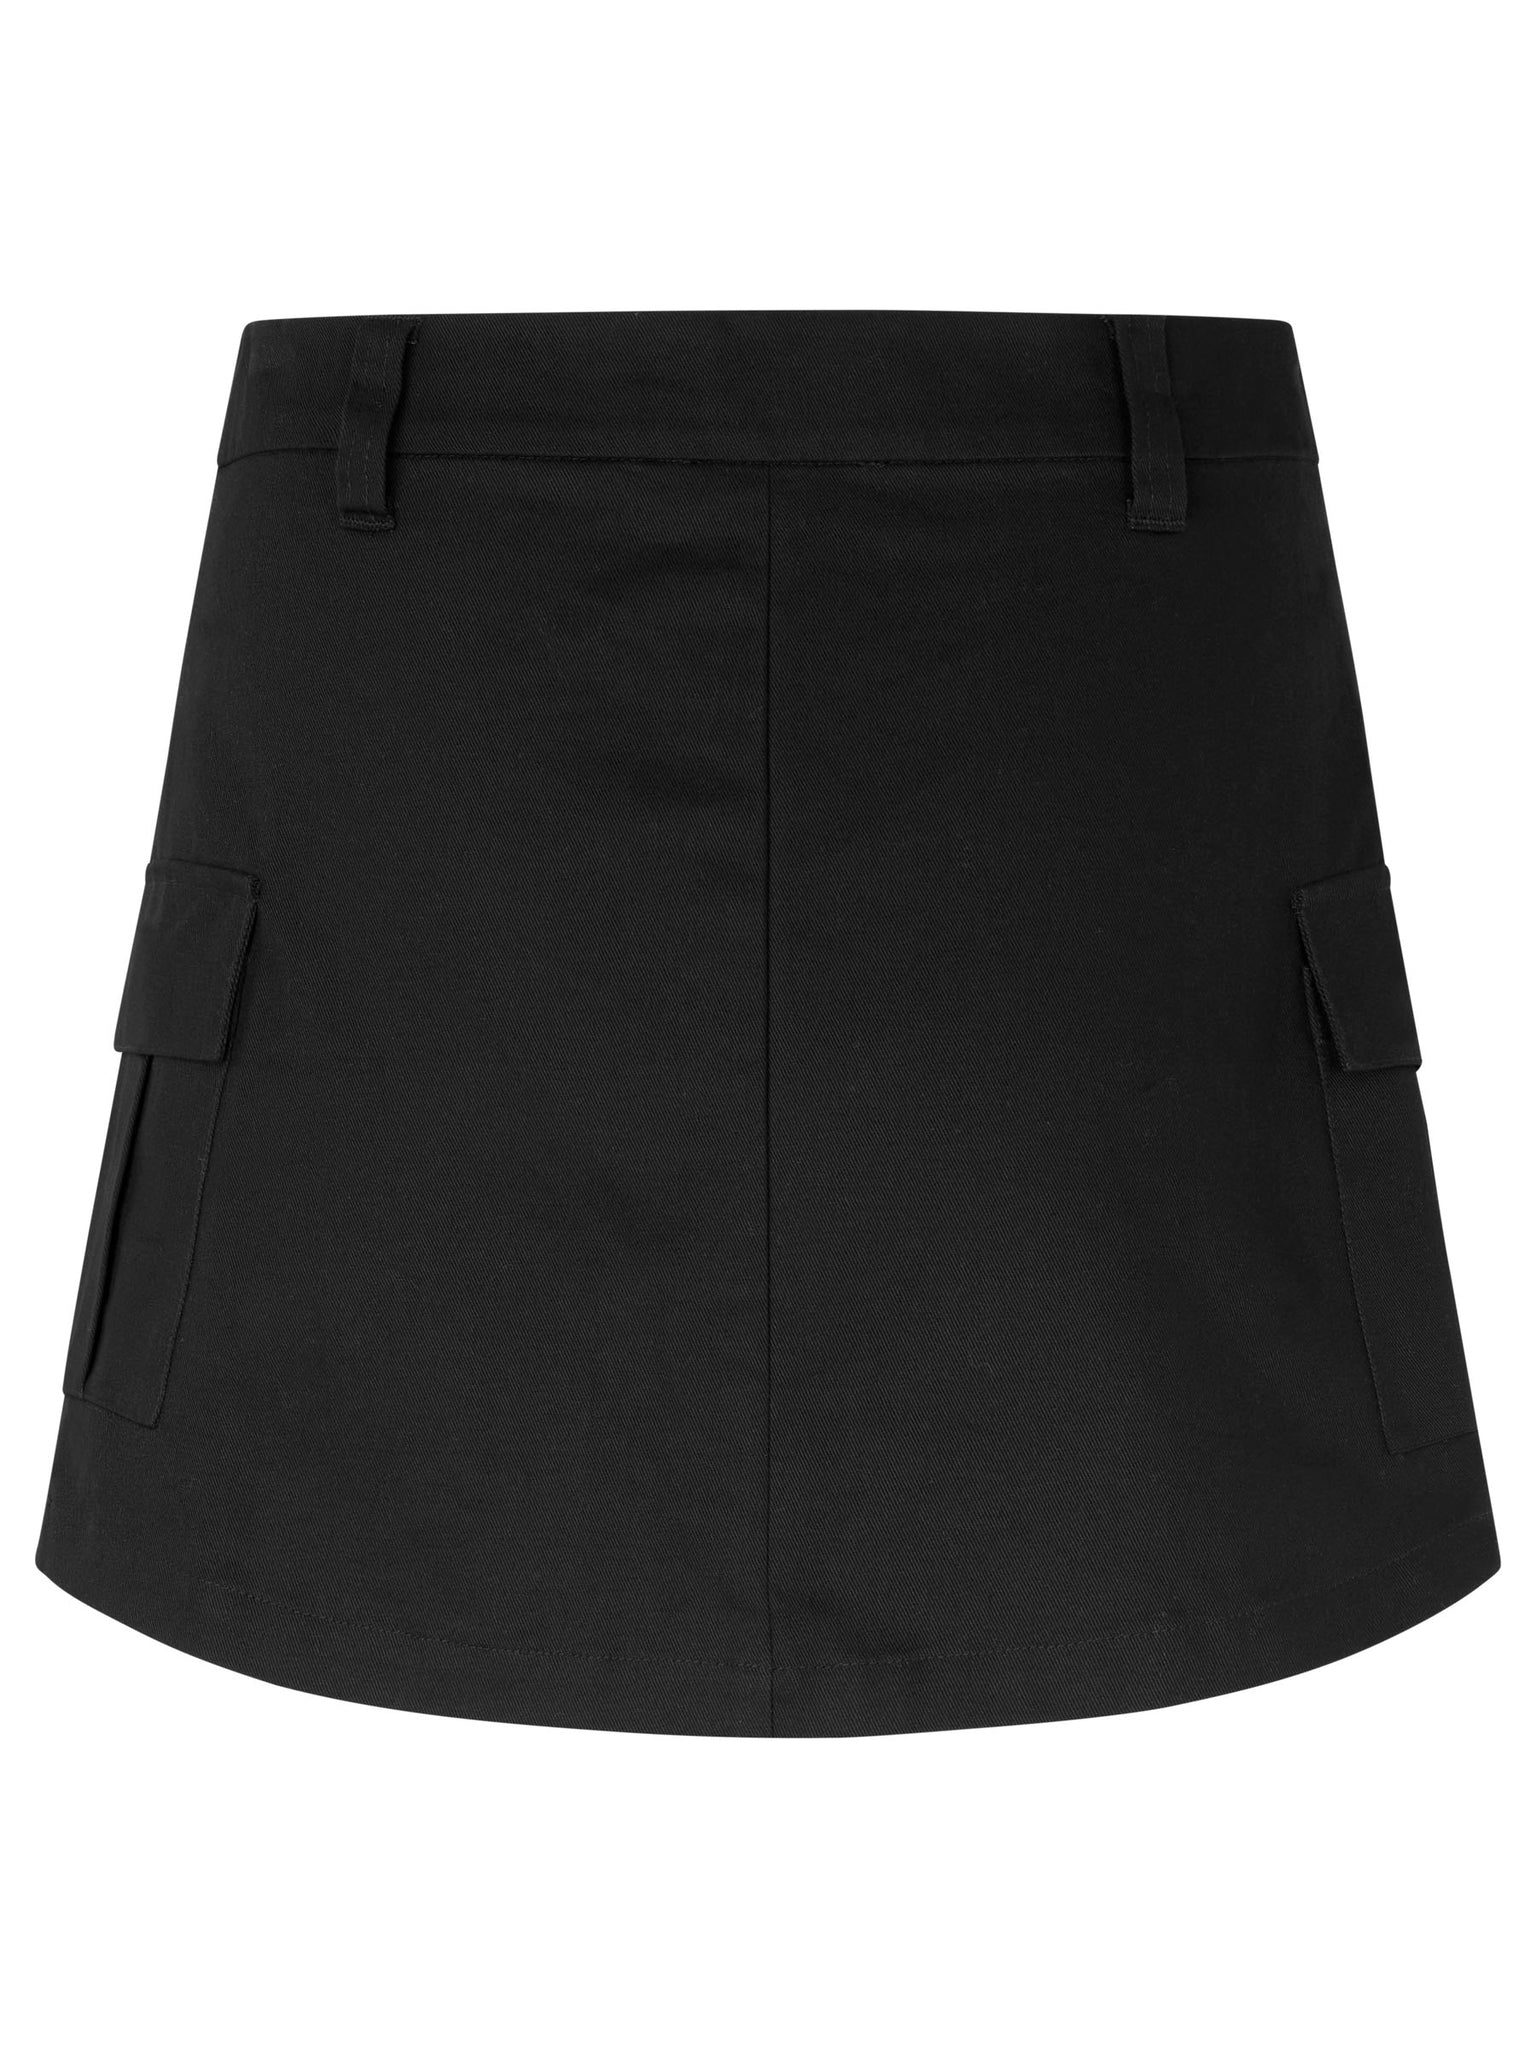 Cargo skirt for girls